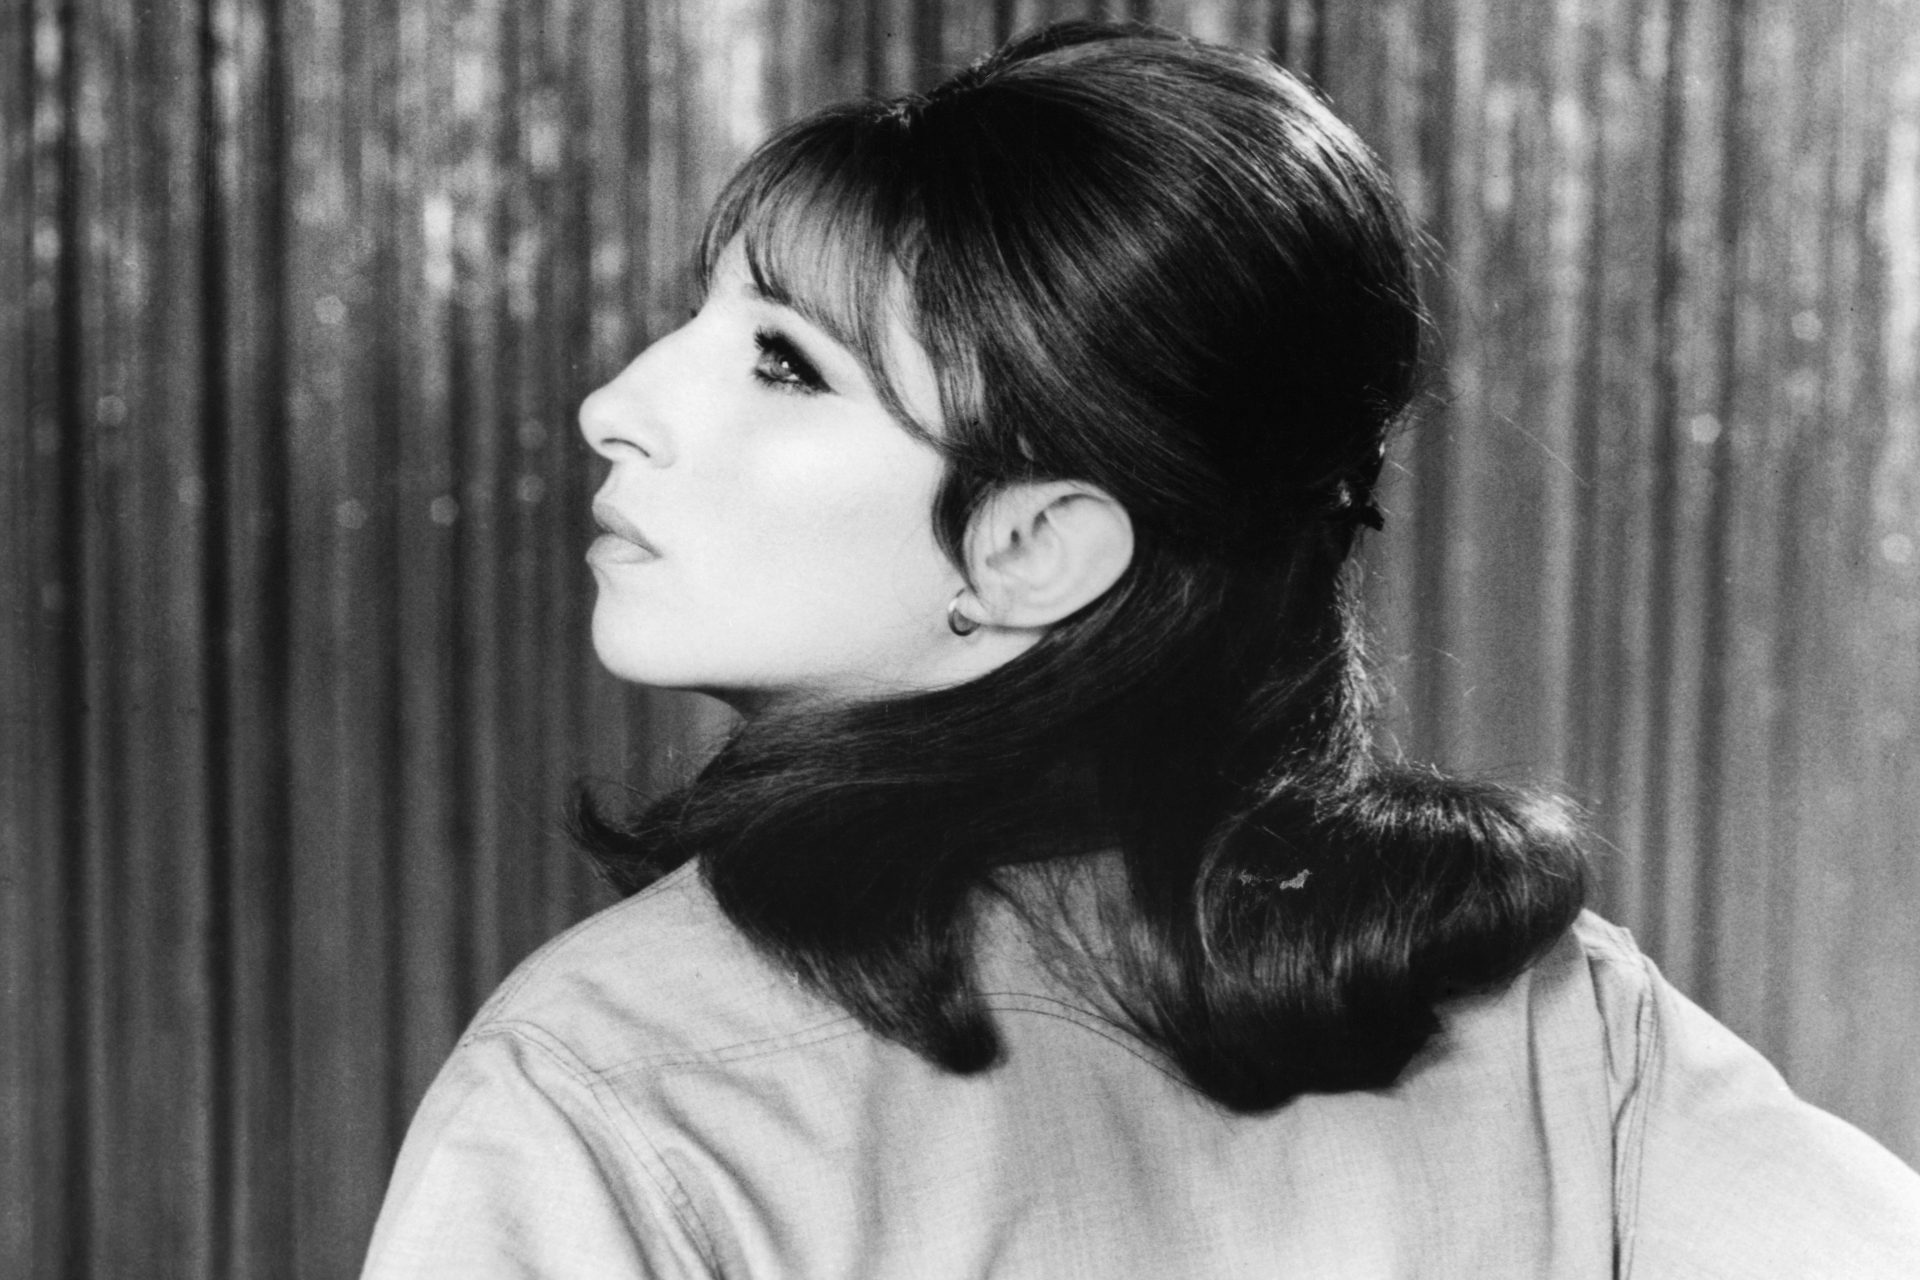 1968 - Barbra Streisand